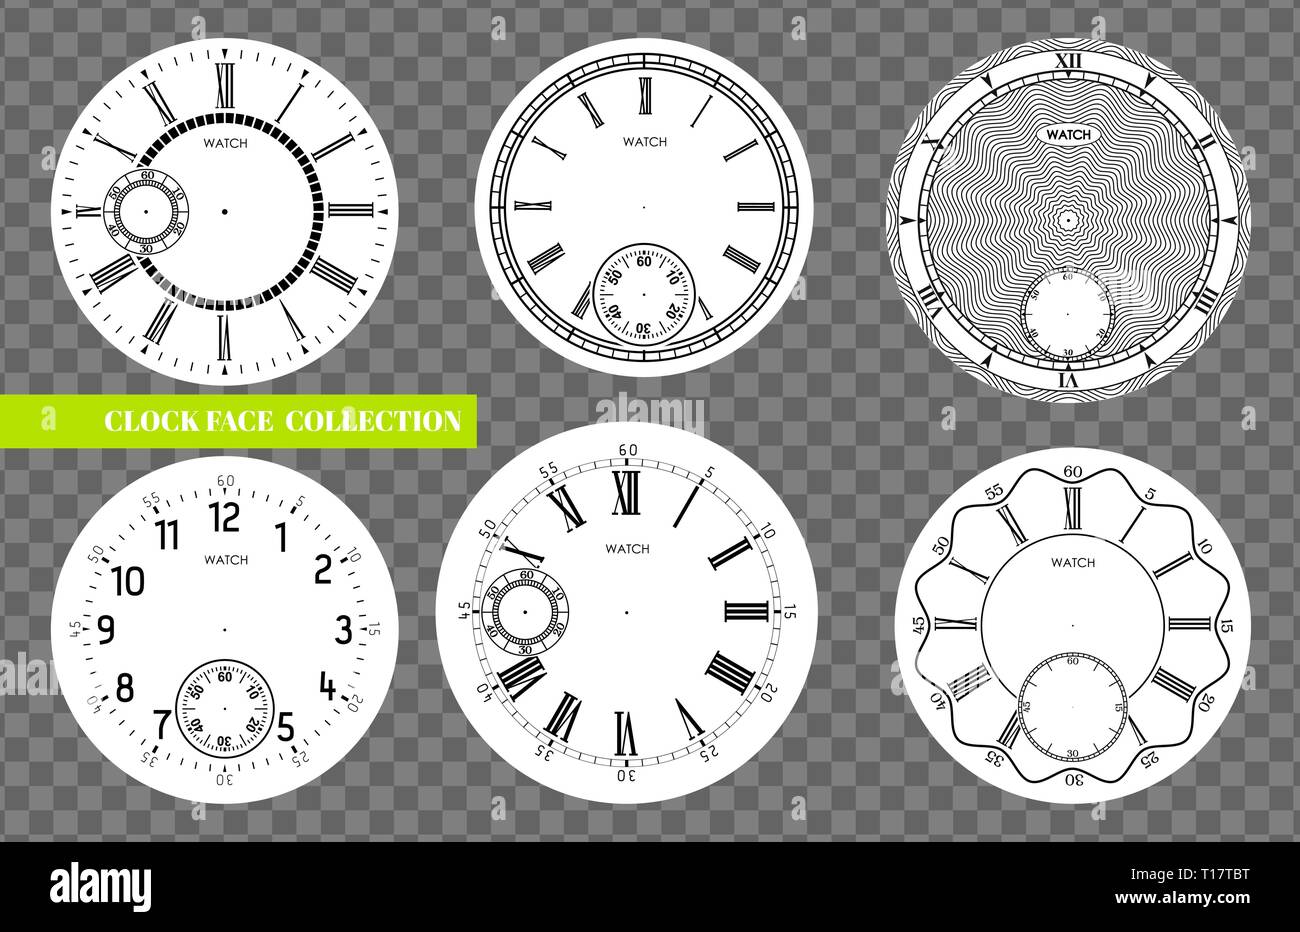 Zifferblatt leer legen Sie auf transparentem Hintergrund isoliert. Vektor watch Design. Vintage römische Ziffer clock Abbildung. Schwarze runde Zahl skalieren Stock Vektor